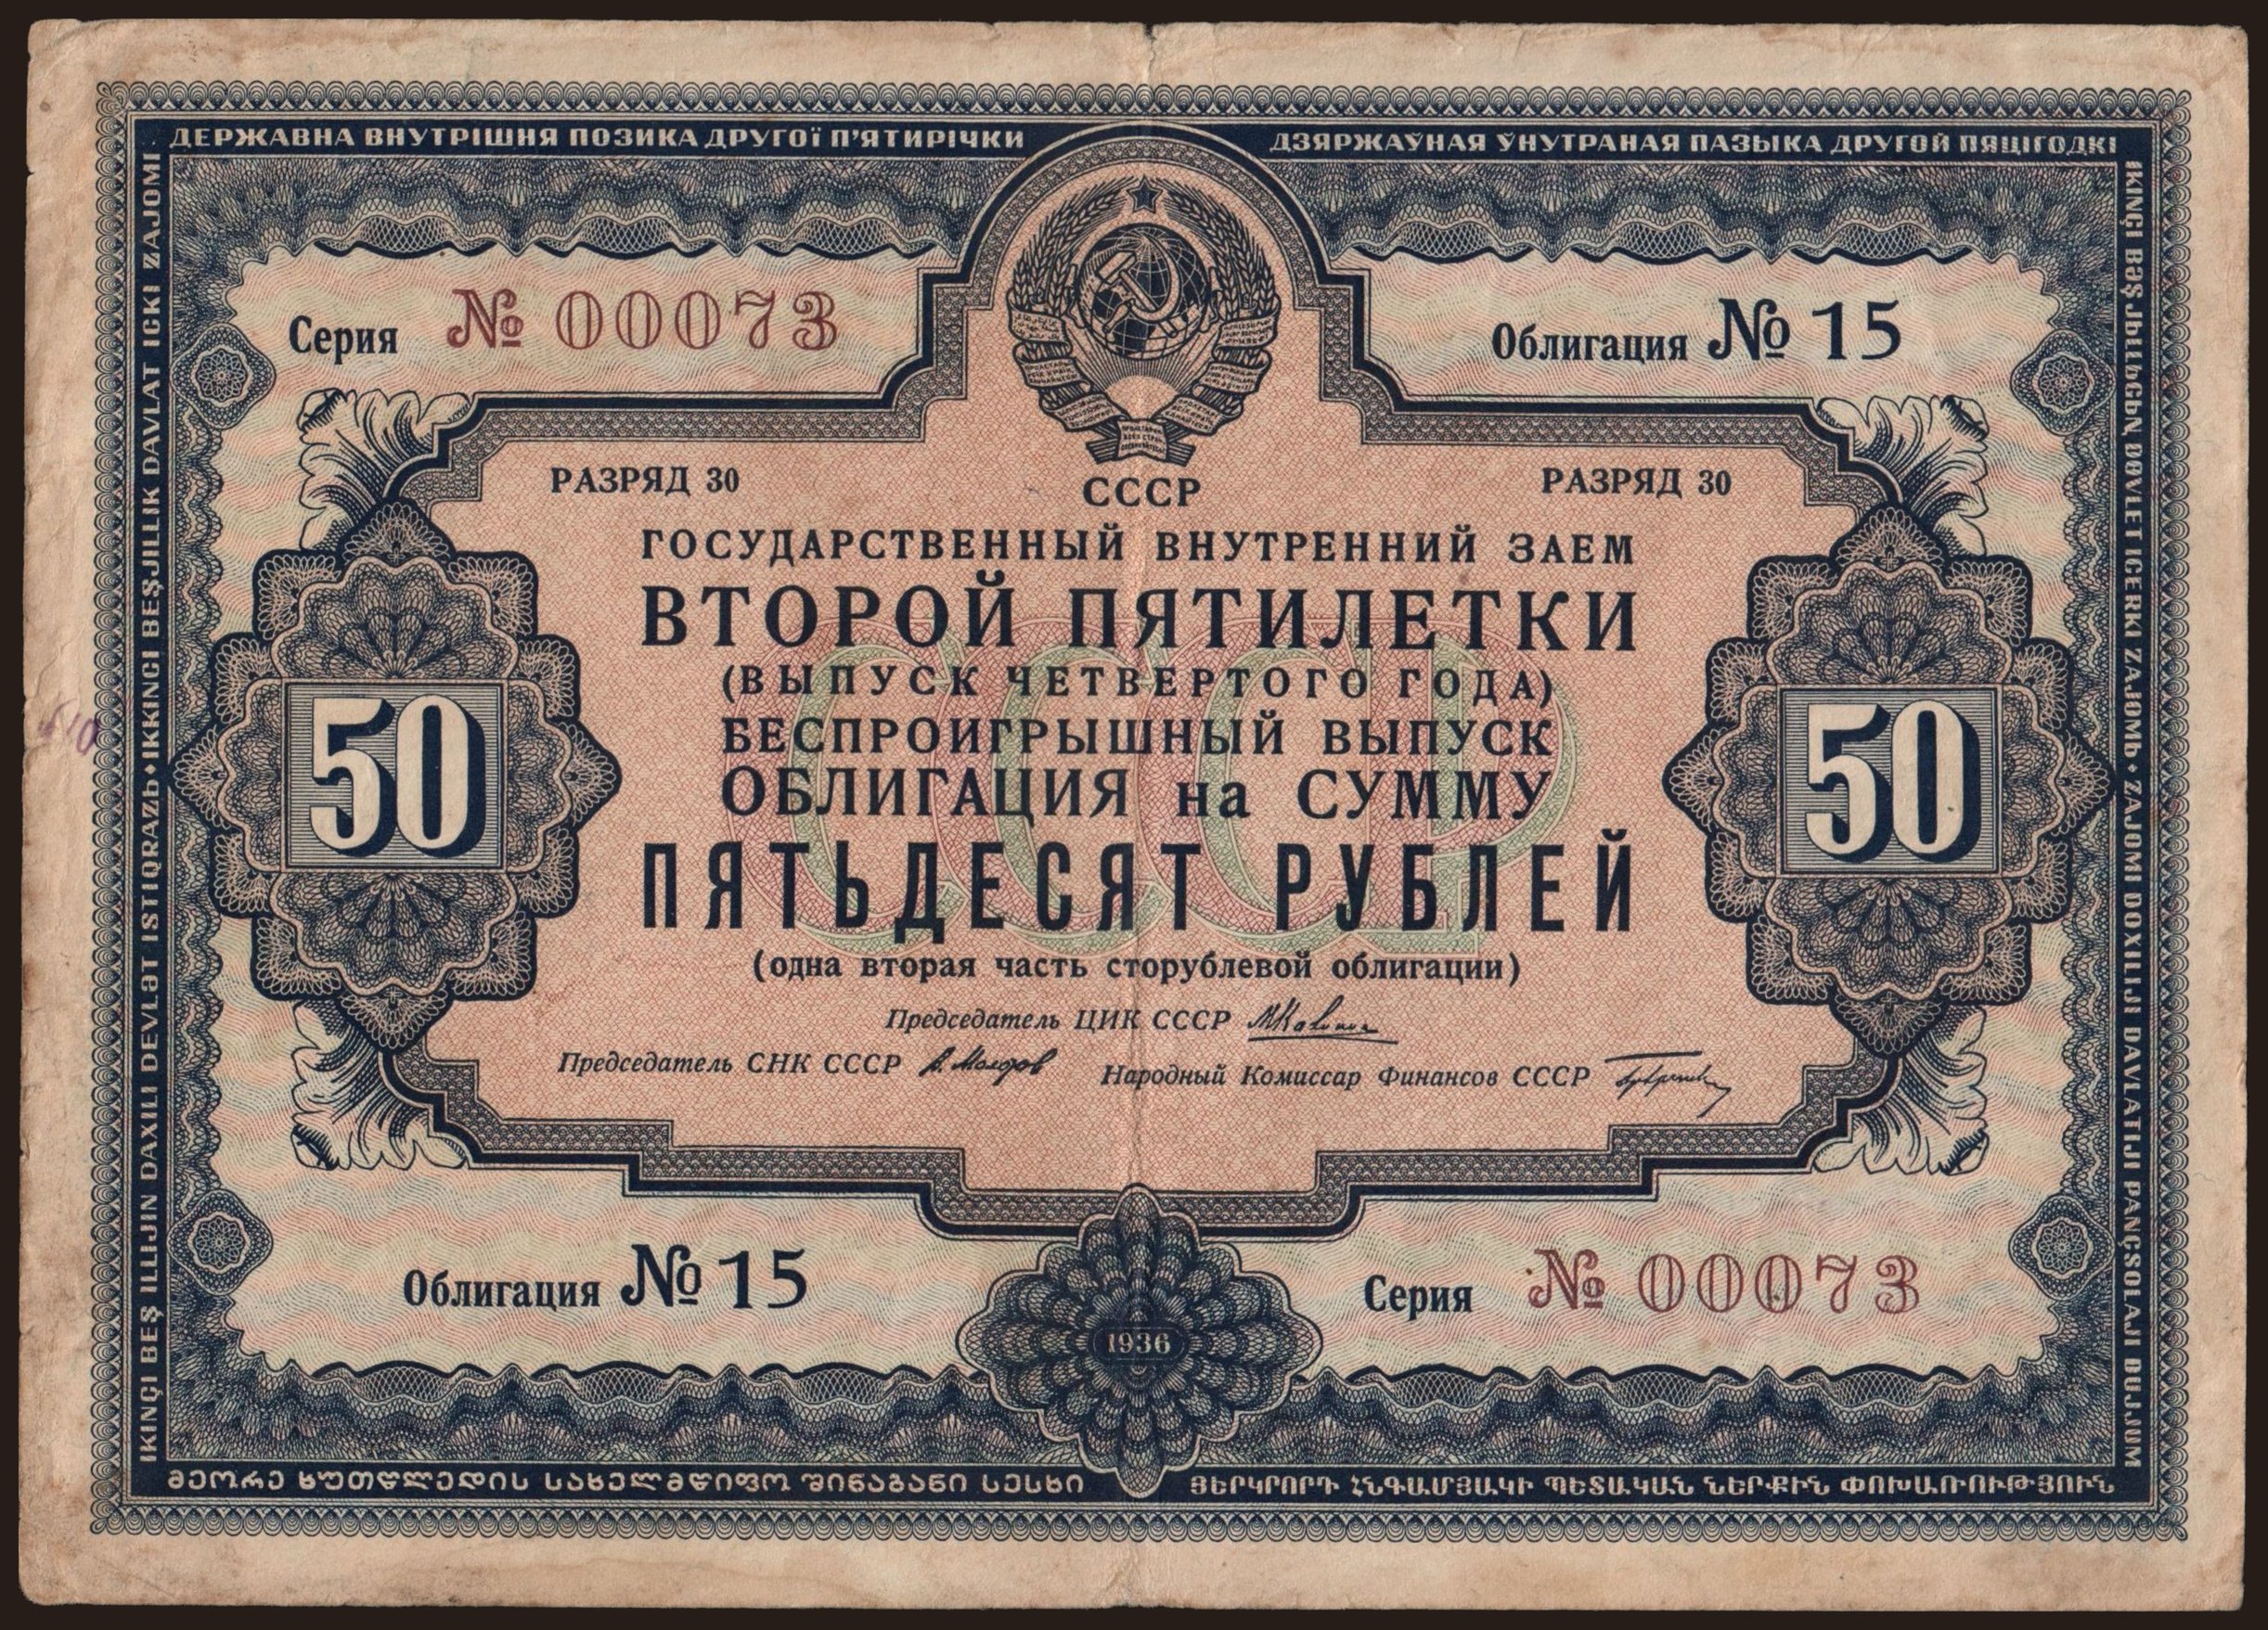 Gosudarstvennyj zaem, 50 rubel, 1936